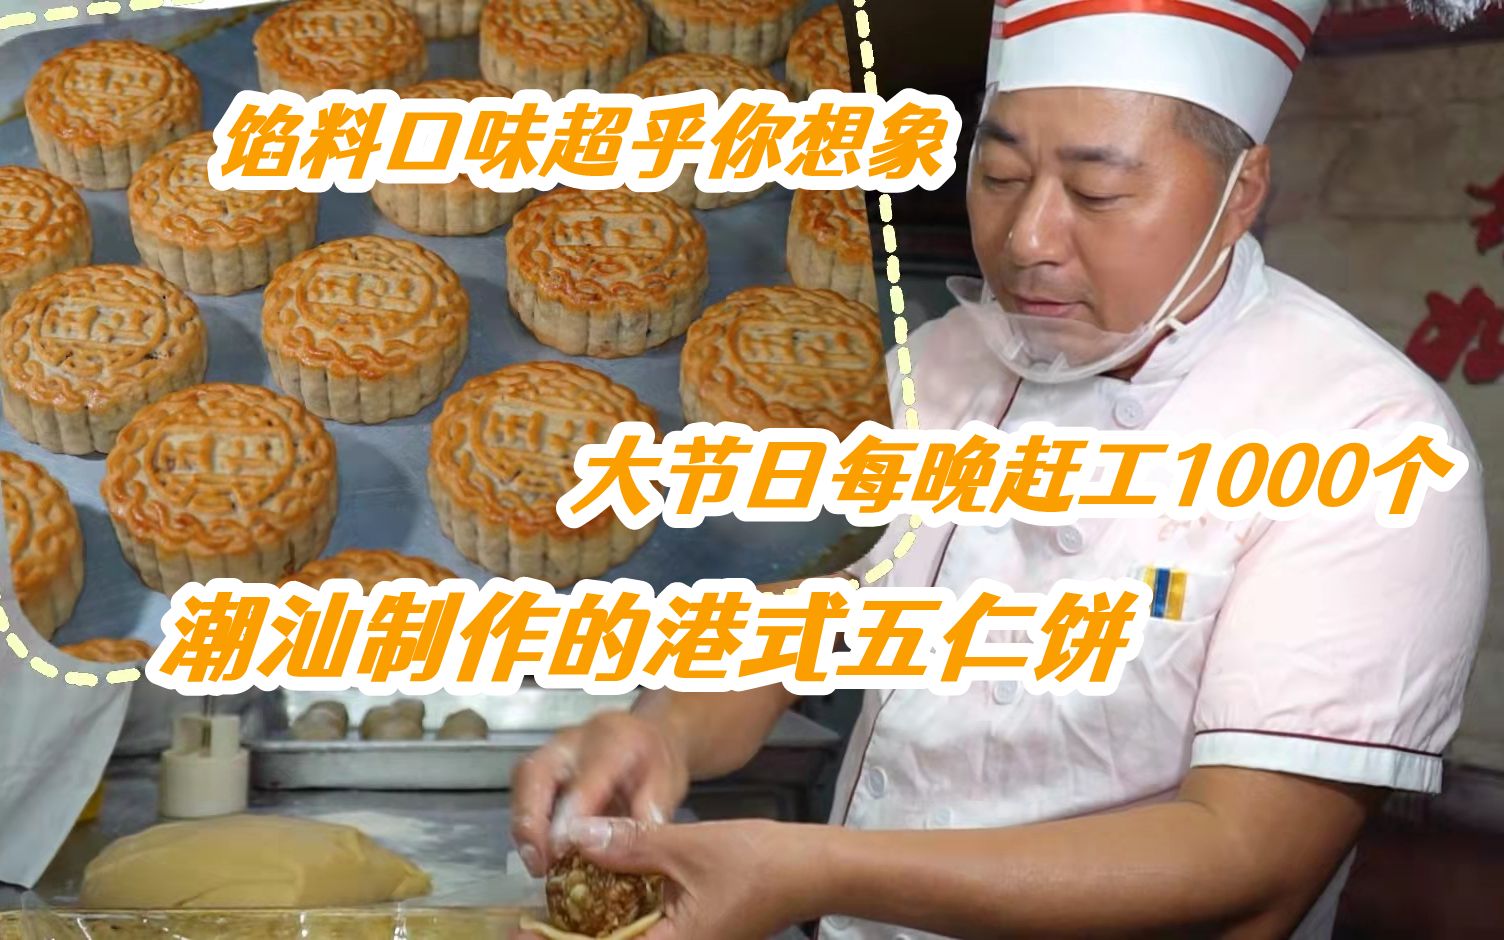 黄源兴饼店-新北市饼-五仁酥饼(2012年特色伴手礼) | 新北市观光旅游网